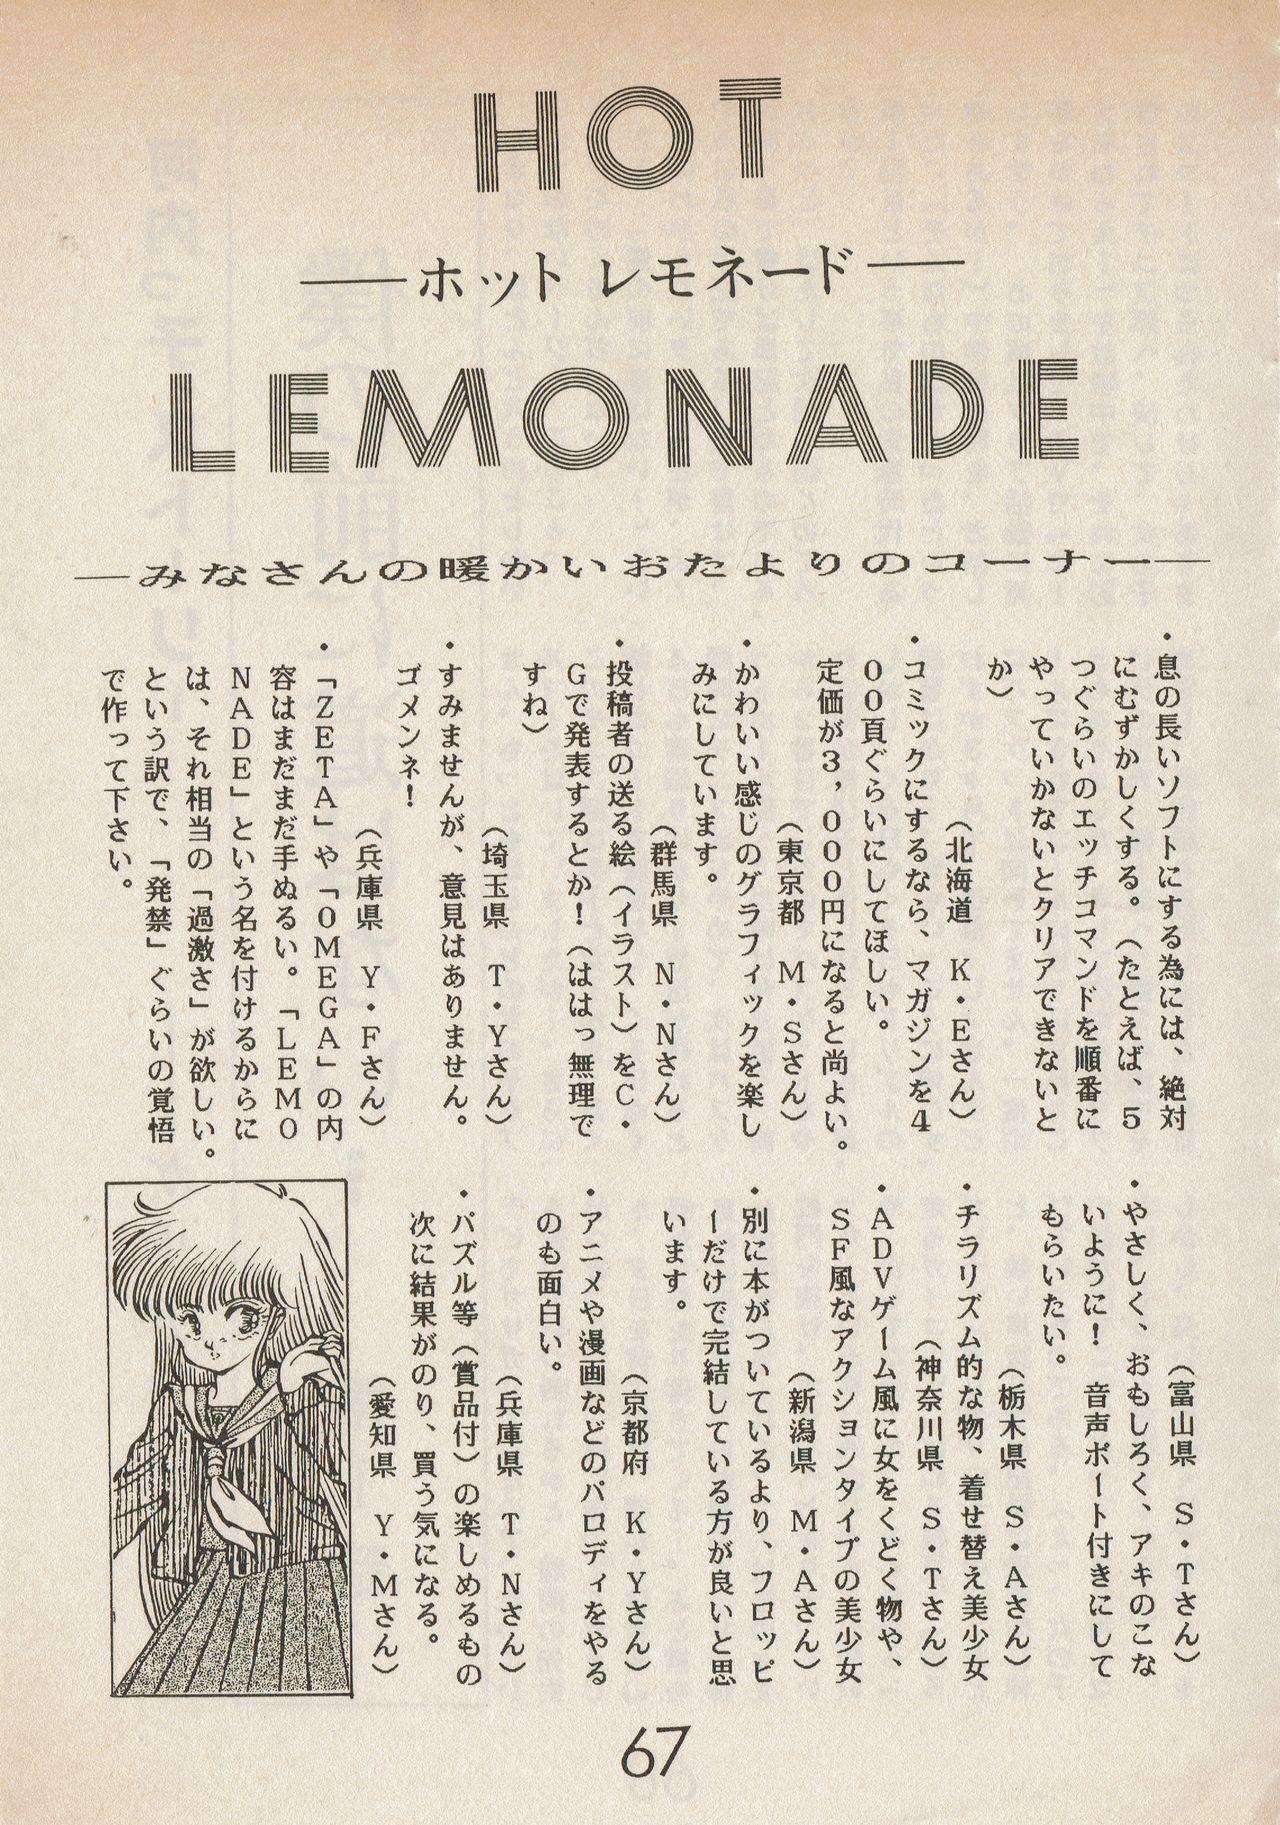 Lemonade volume 1 66